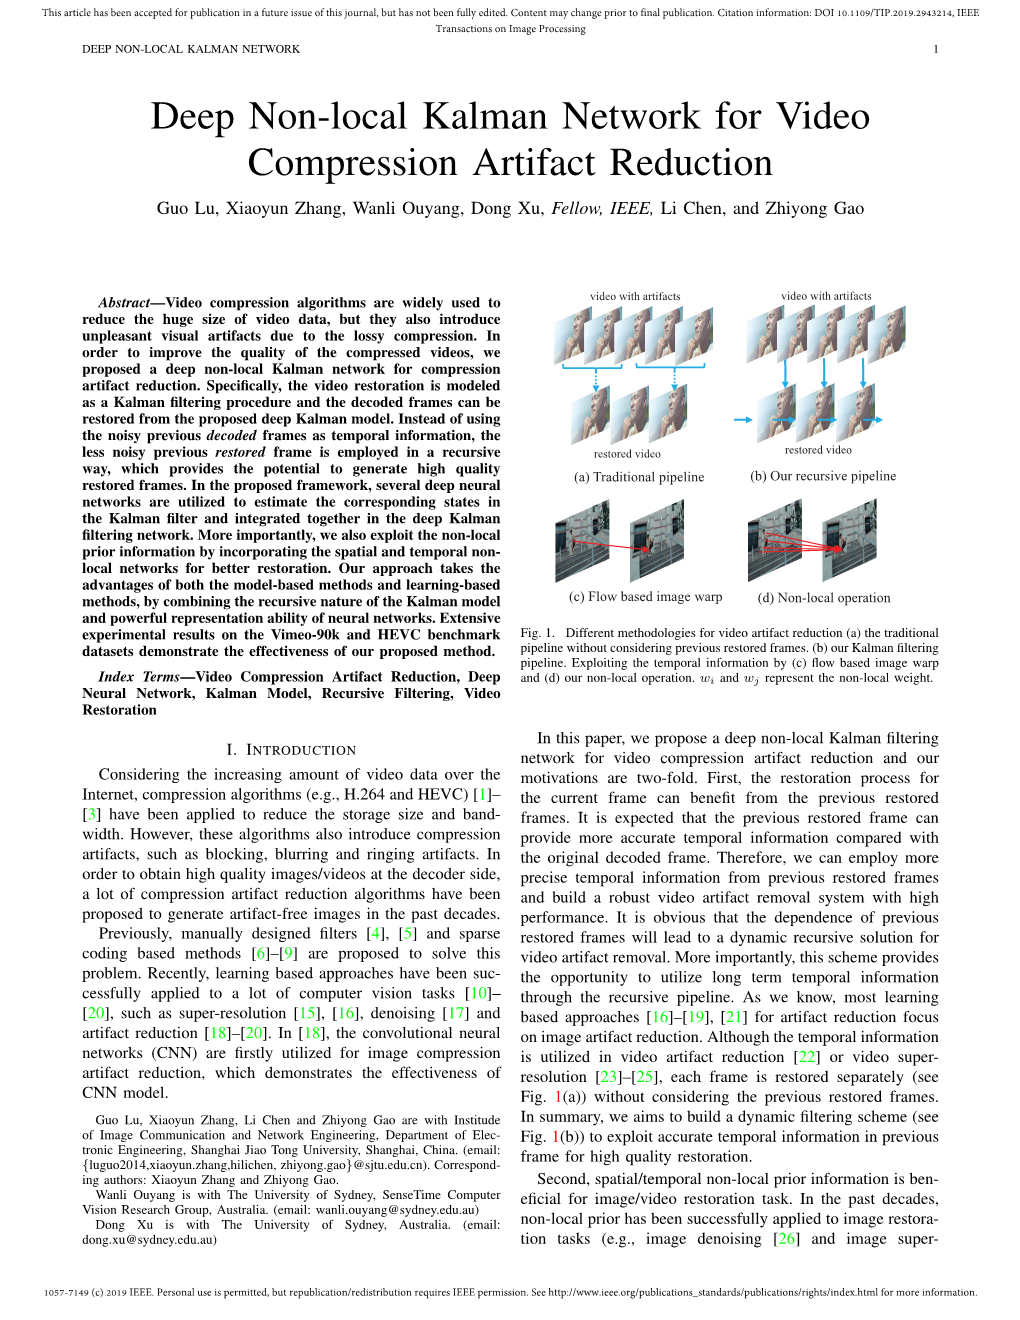 Deep Non-Local Kalman Network for Video Compression Artifact Reduction Guo Lu, Xiaoyun Zhang, Wanli Ouyang, Dong Xu, Fellow, IEEE, Li Chen, and Zhiyong Gao